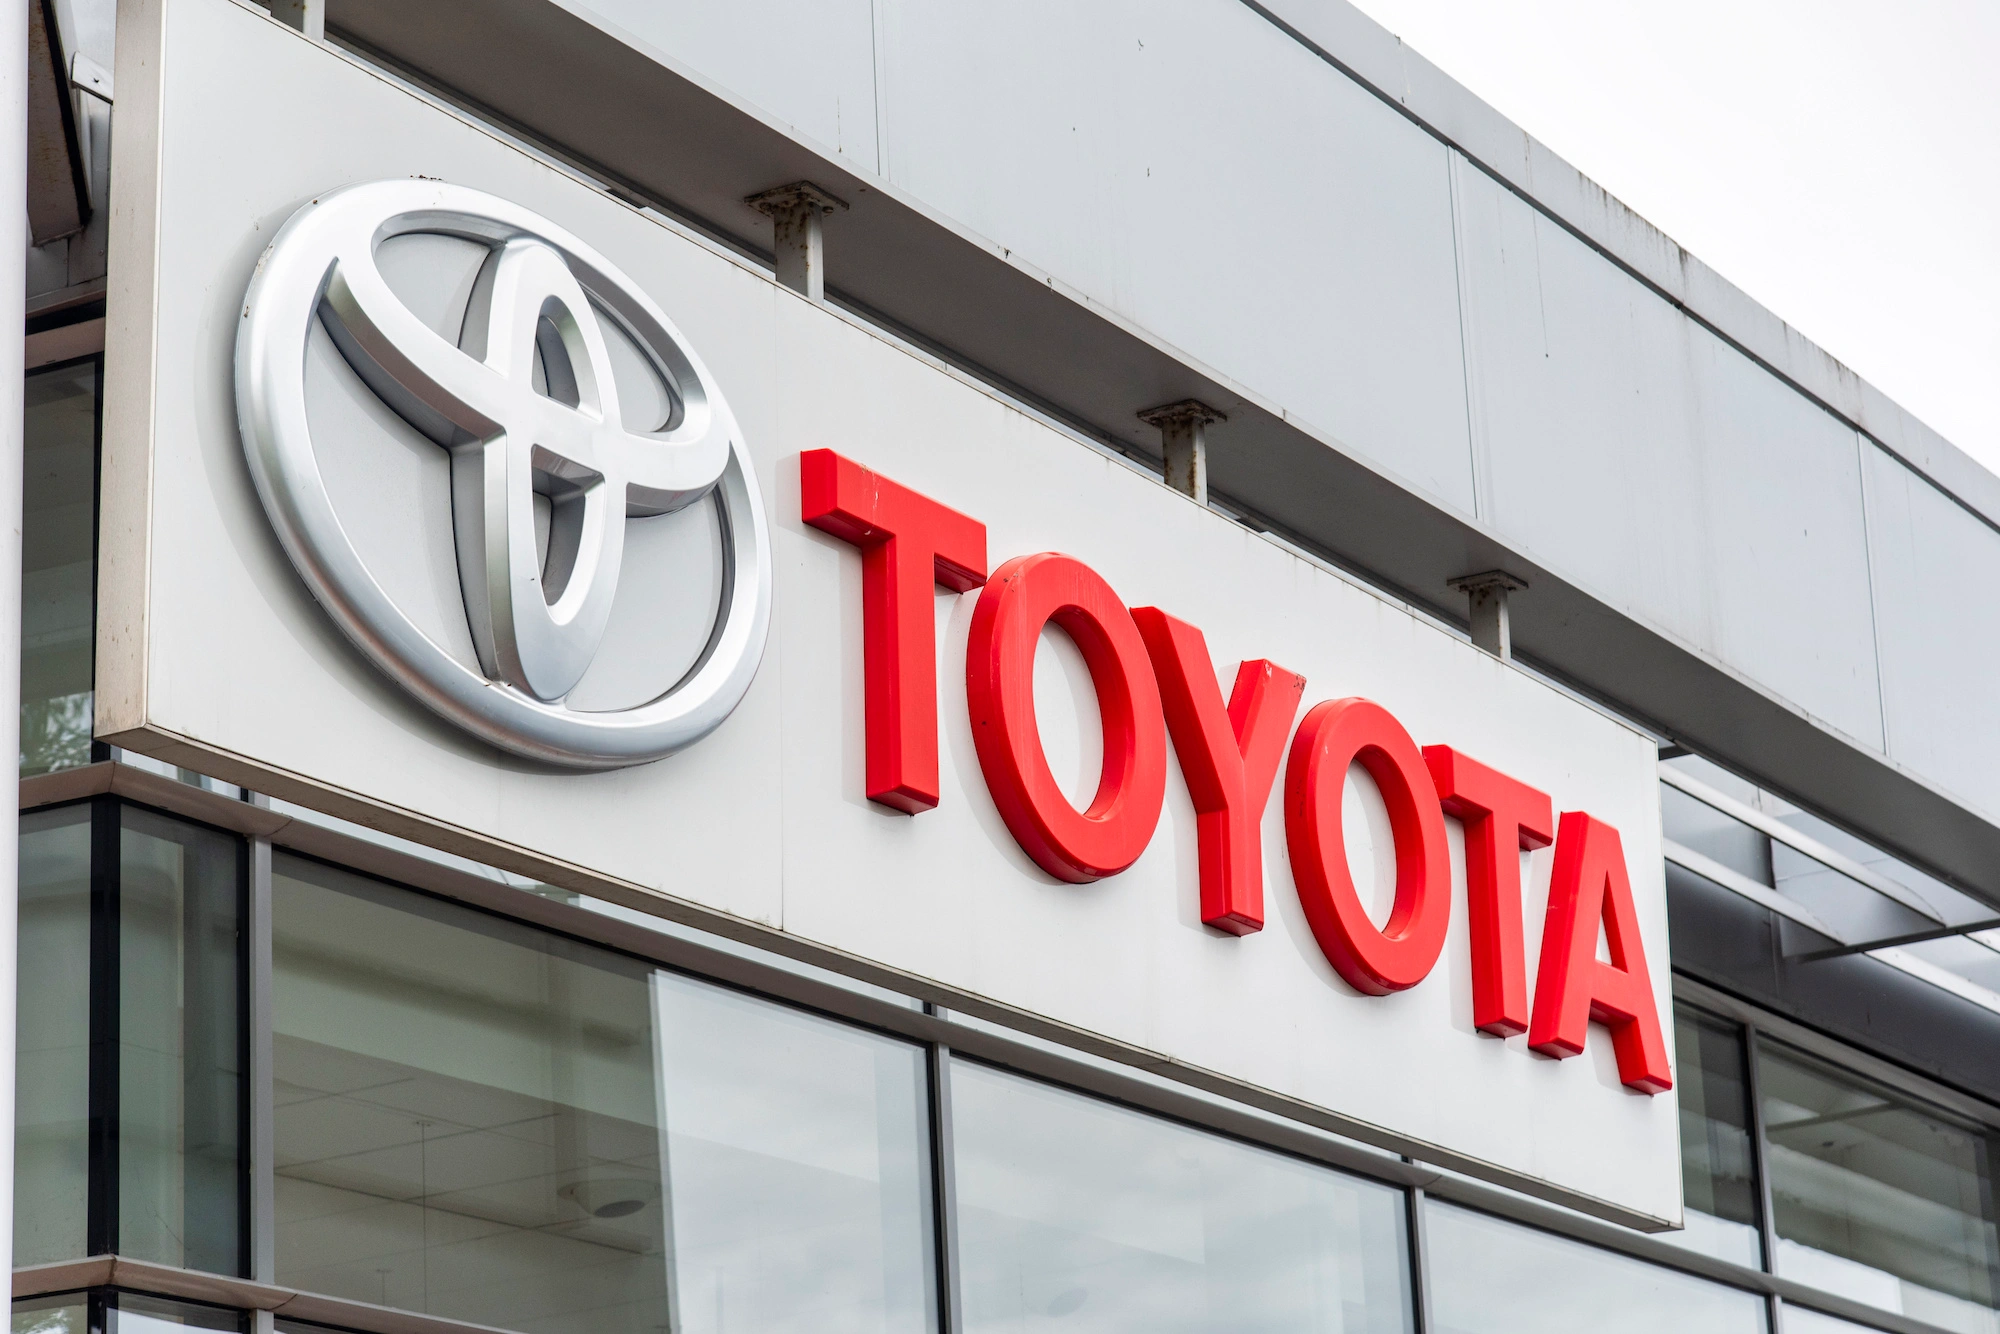 5883 Toyota втратила звання найдорожчого автомобільного бренду